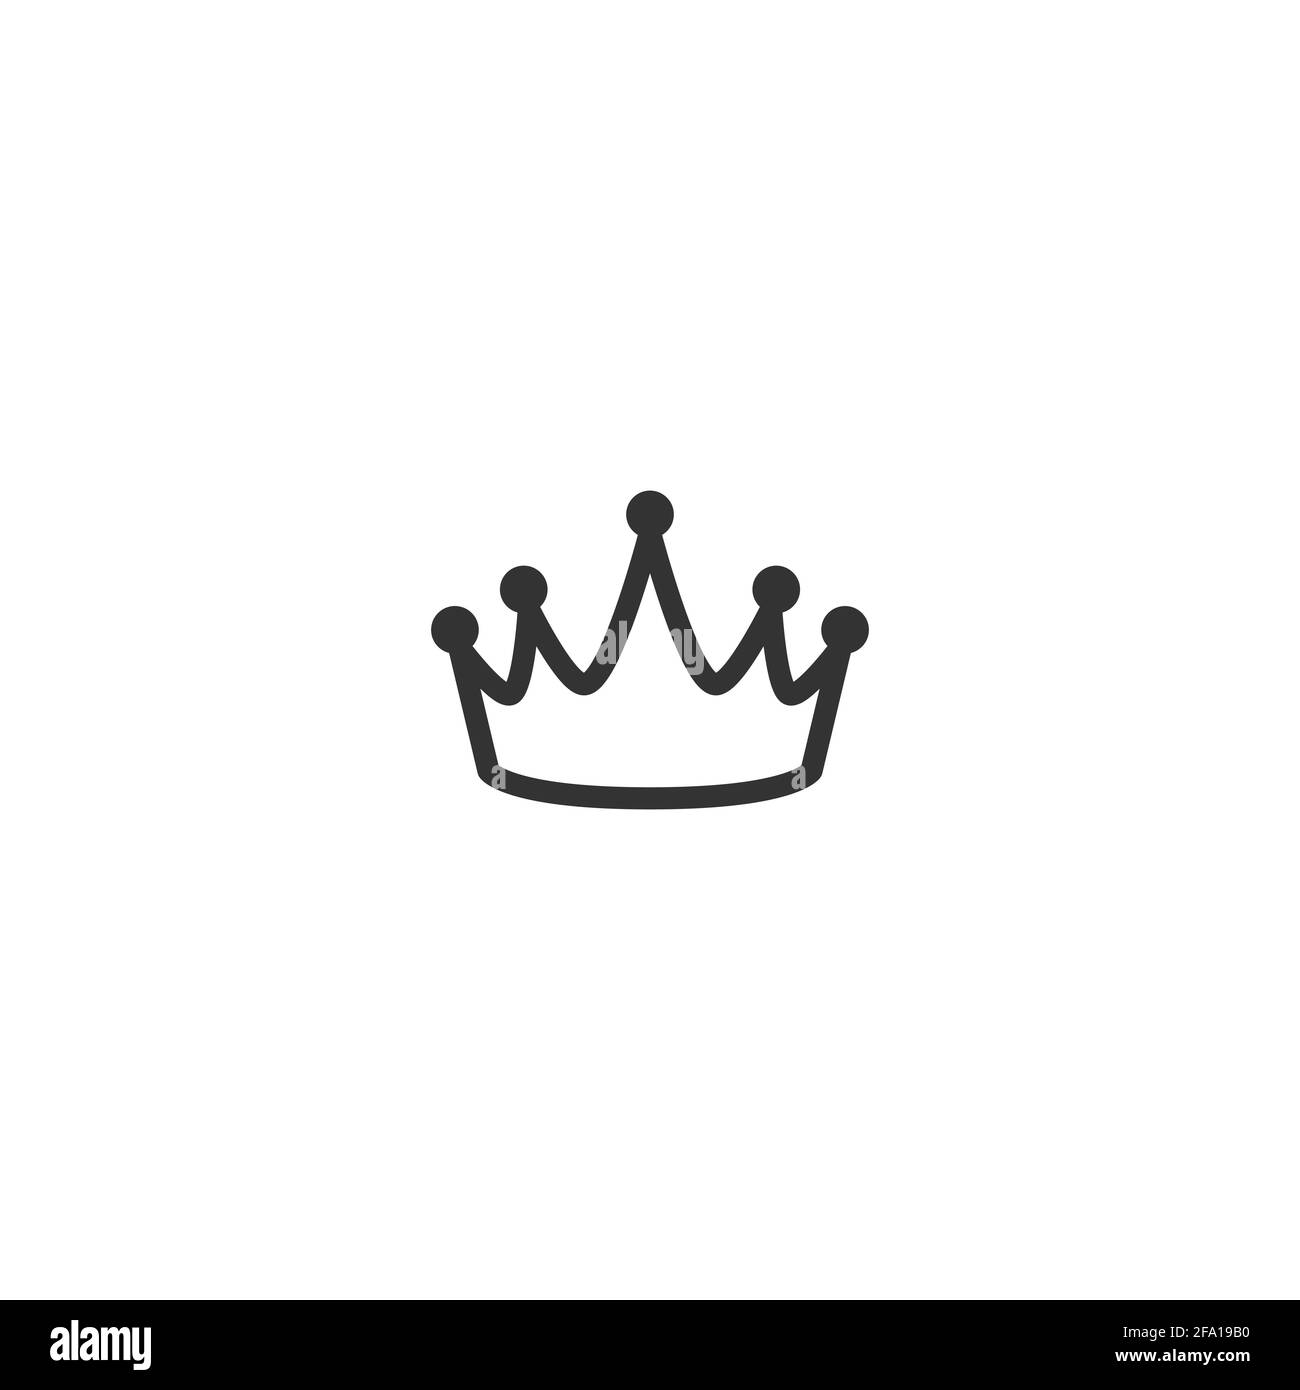 Icona della linea della corona isolata in bianco. Royal, LUXURY, vip, cartello di prima classe. Premio vincitore. Monarchia, autorità, simbolo del potere. Illustrazione semplice vettoriale. Illustrazione Vettoriale